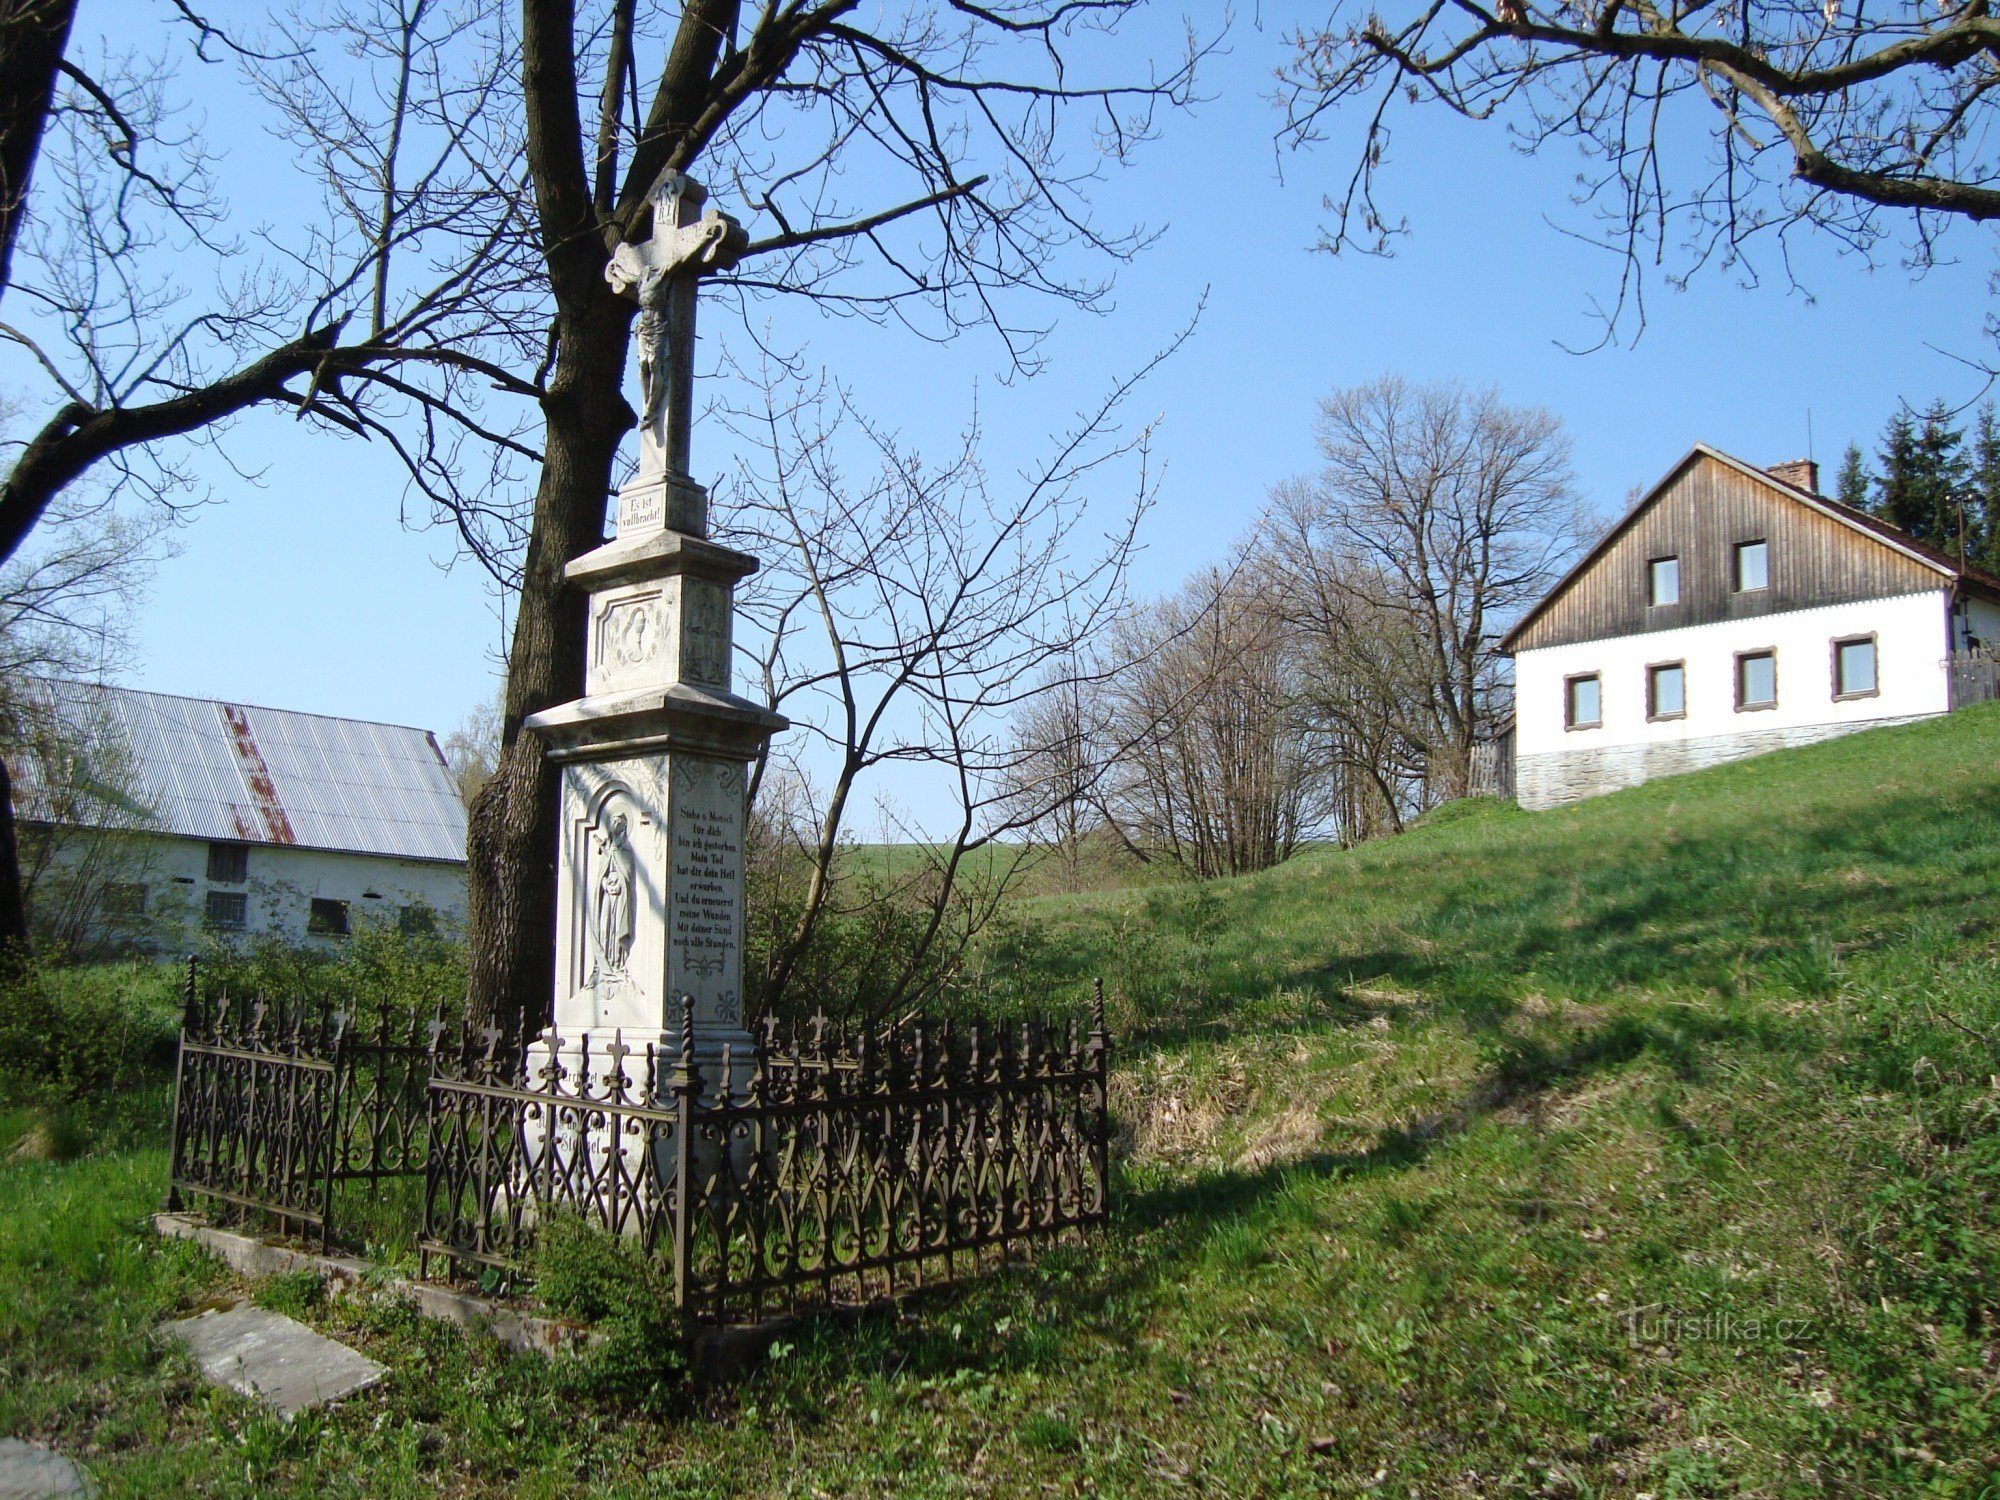 Norberčany-Stará Libavá-cruz de 1892 en el centro del pueblo-Foto: Ulrych Mir.